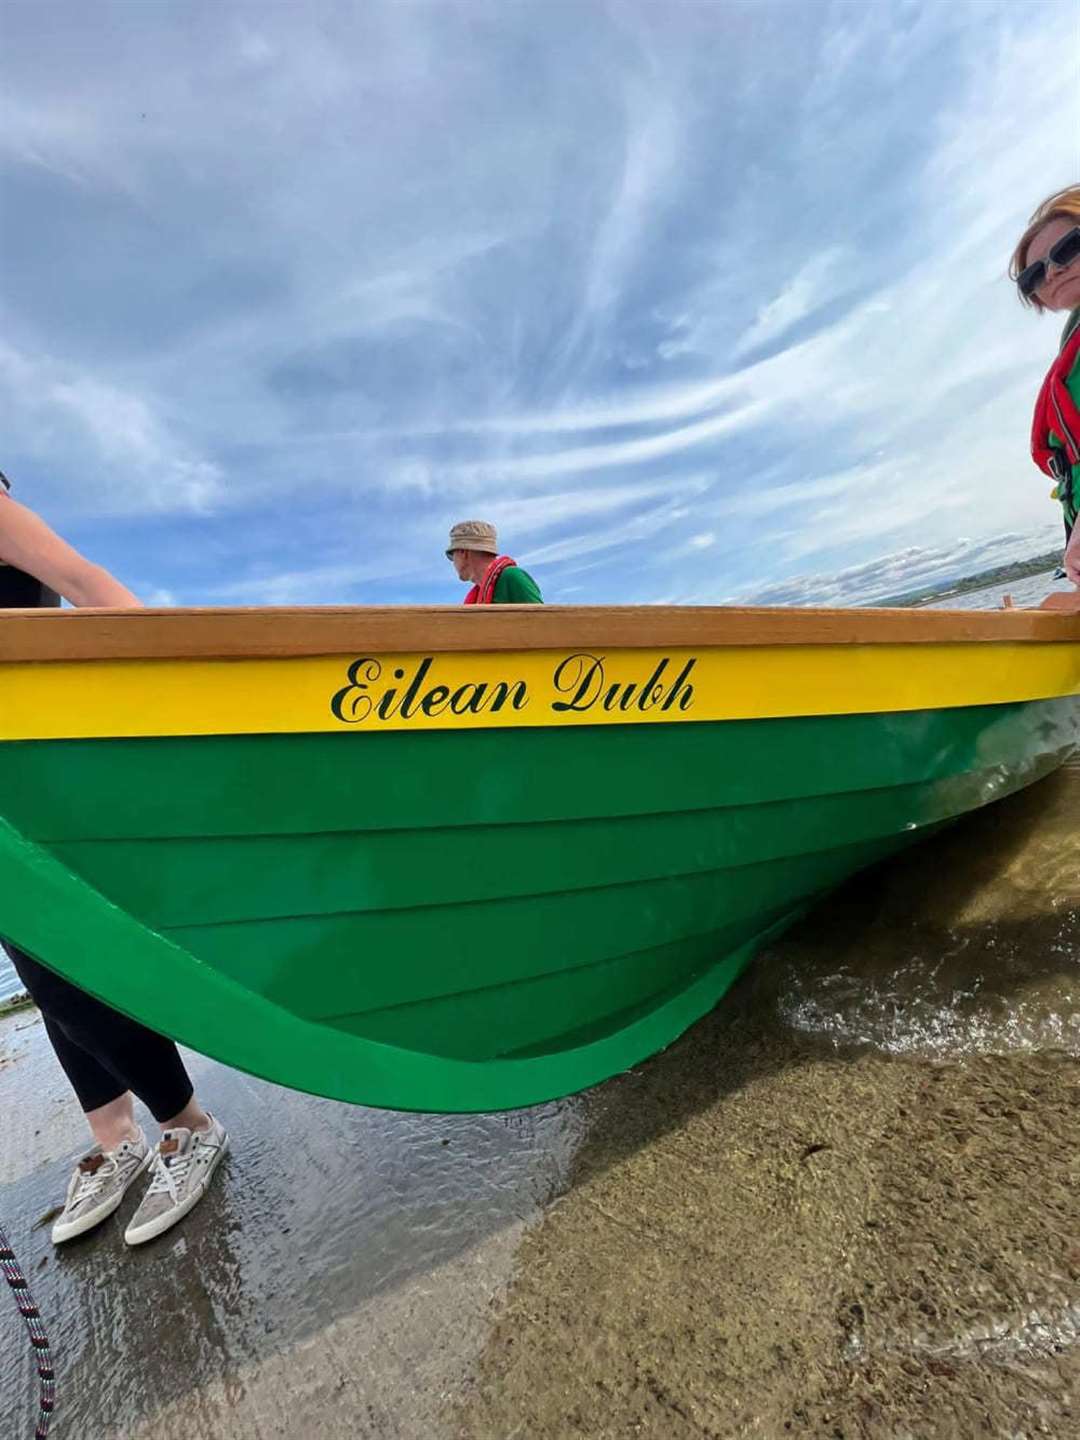 The boat: 'Eilean Dubh.'